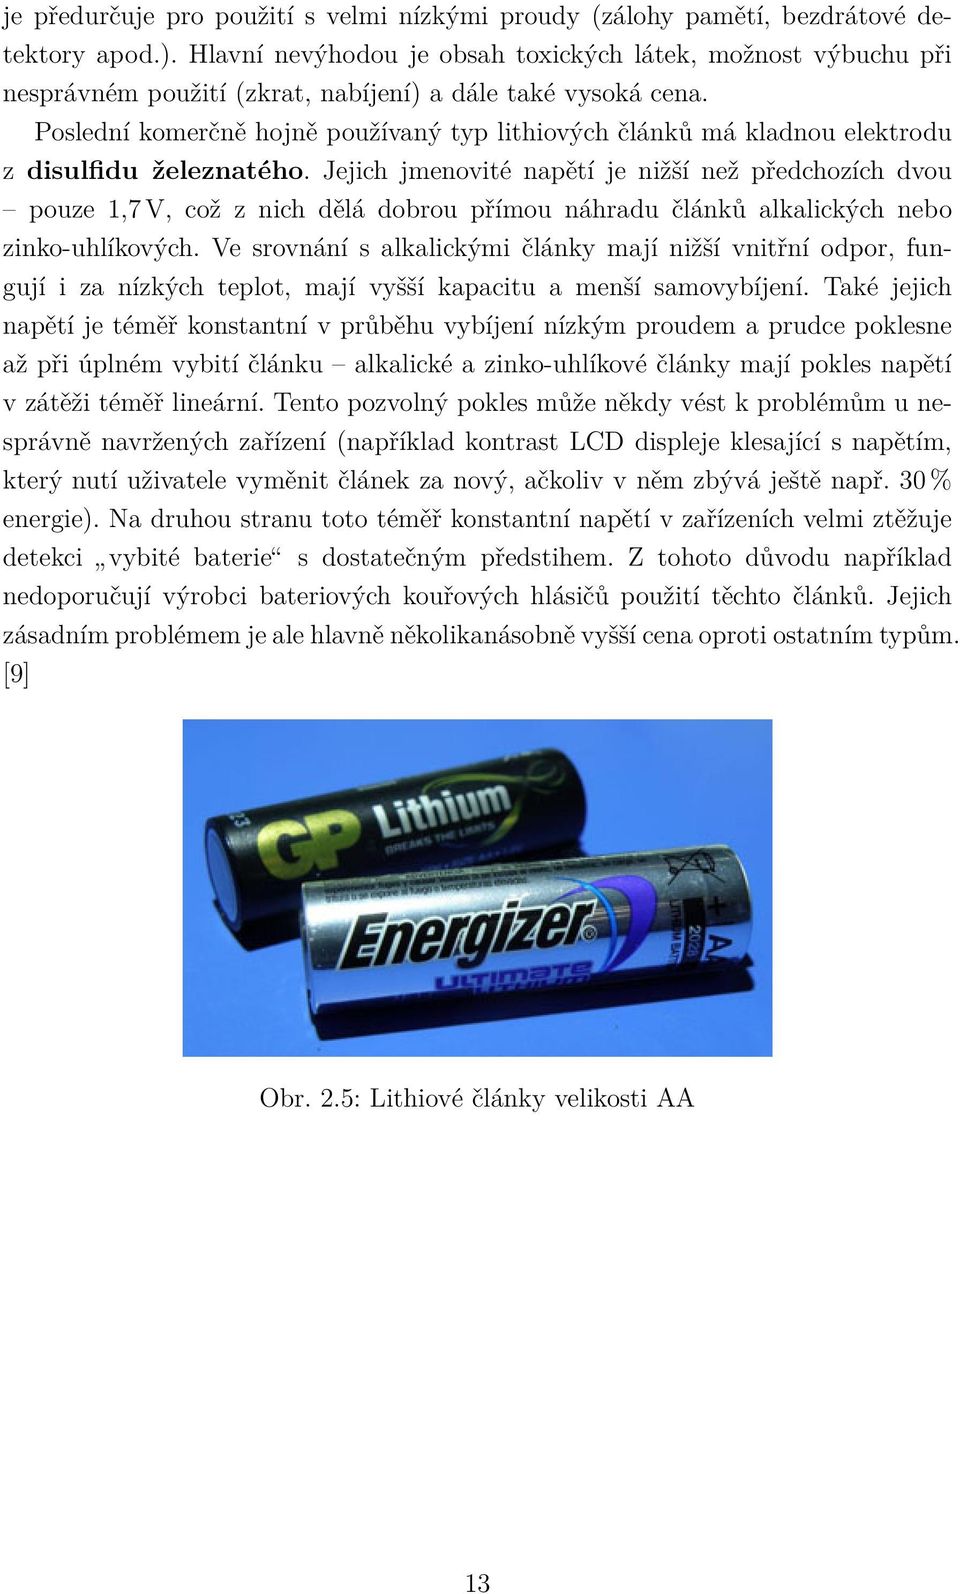 Poslední komerčně hojně používaný typ lithiových článků má kladnou elektrodu z disulfidu železnatého.